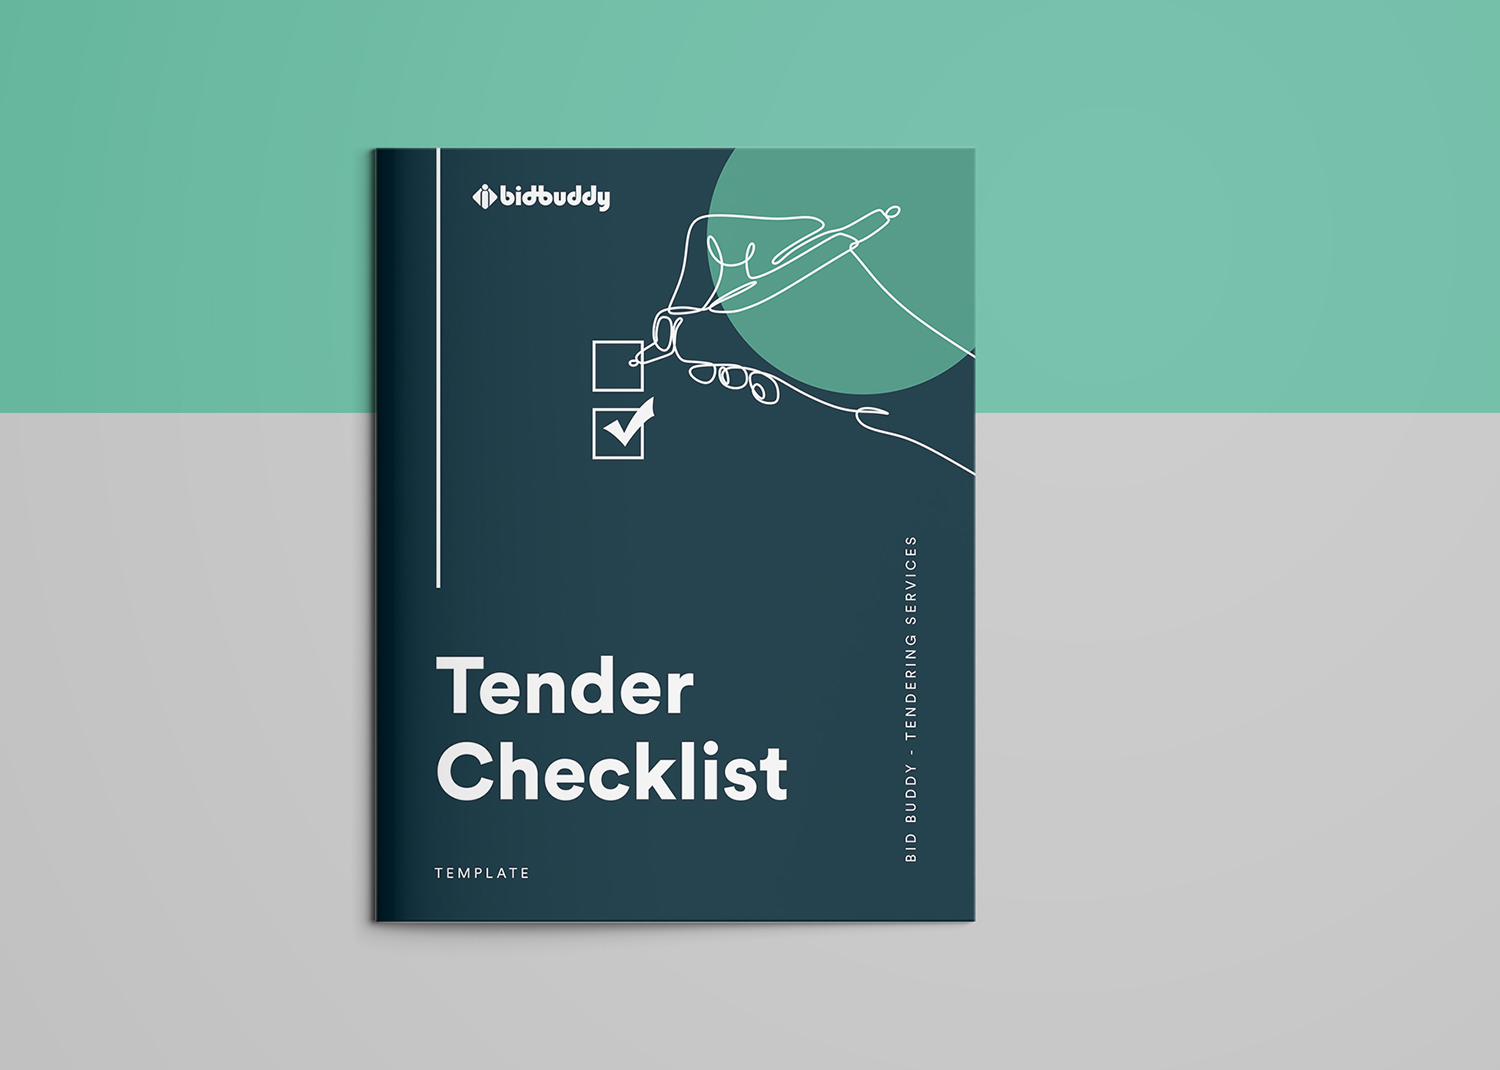 Tender Checklist